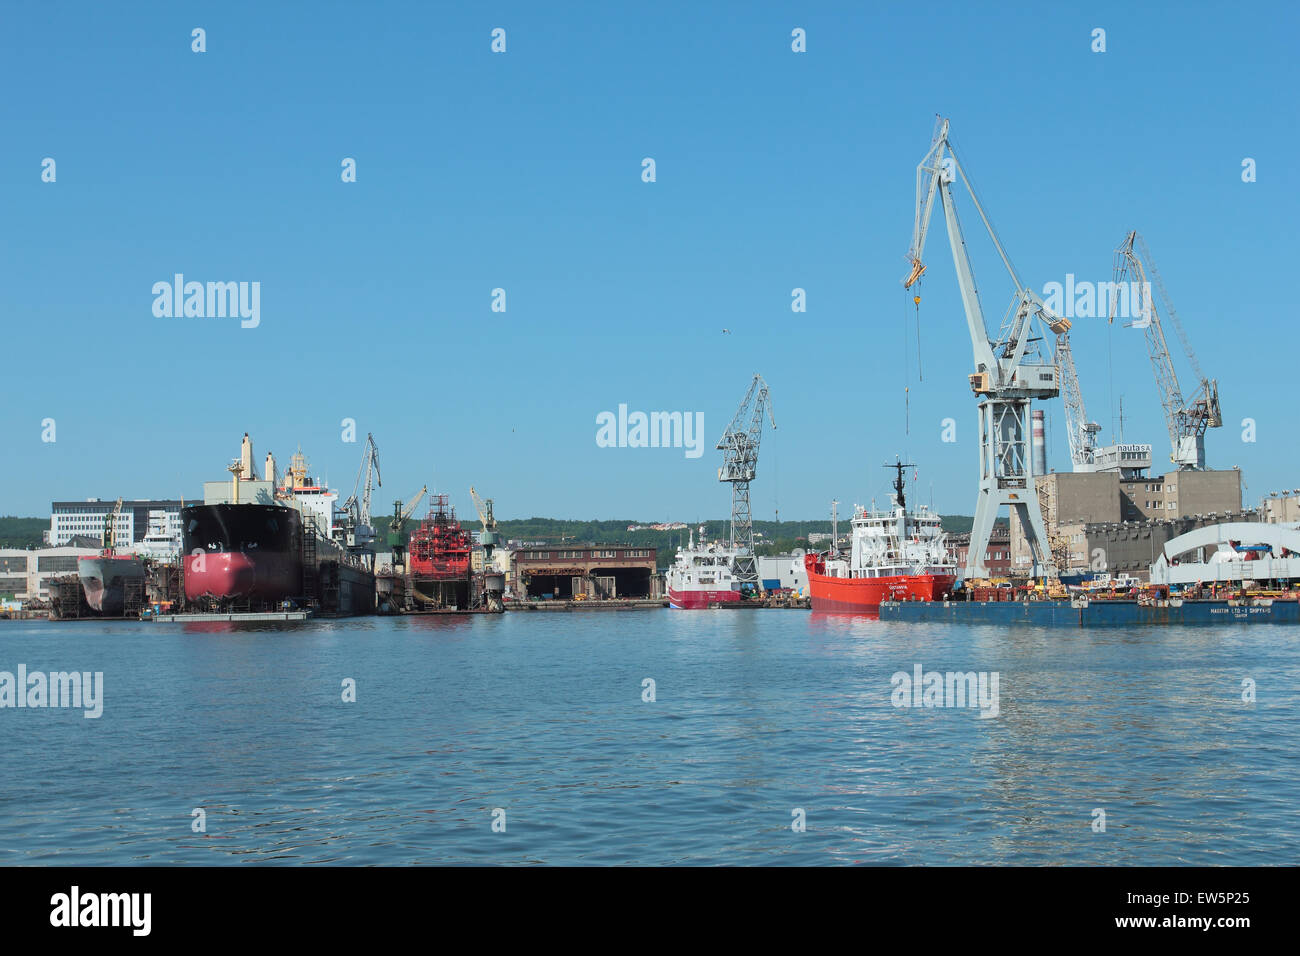 Chantier naval de Gdynia, Pologne. Avis sur l'utilisation de grues et docks secs Banque D'Images